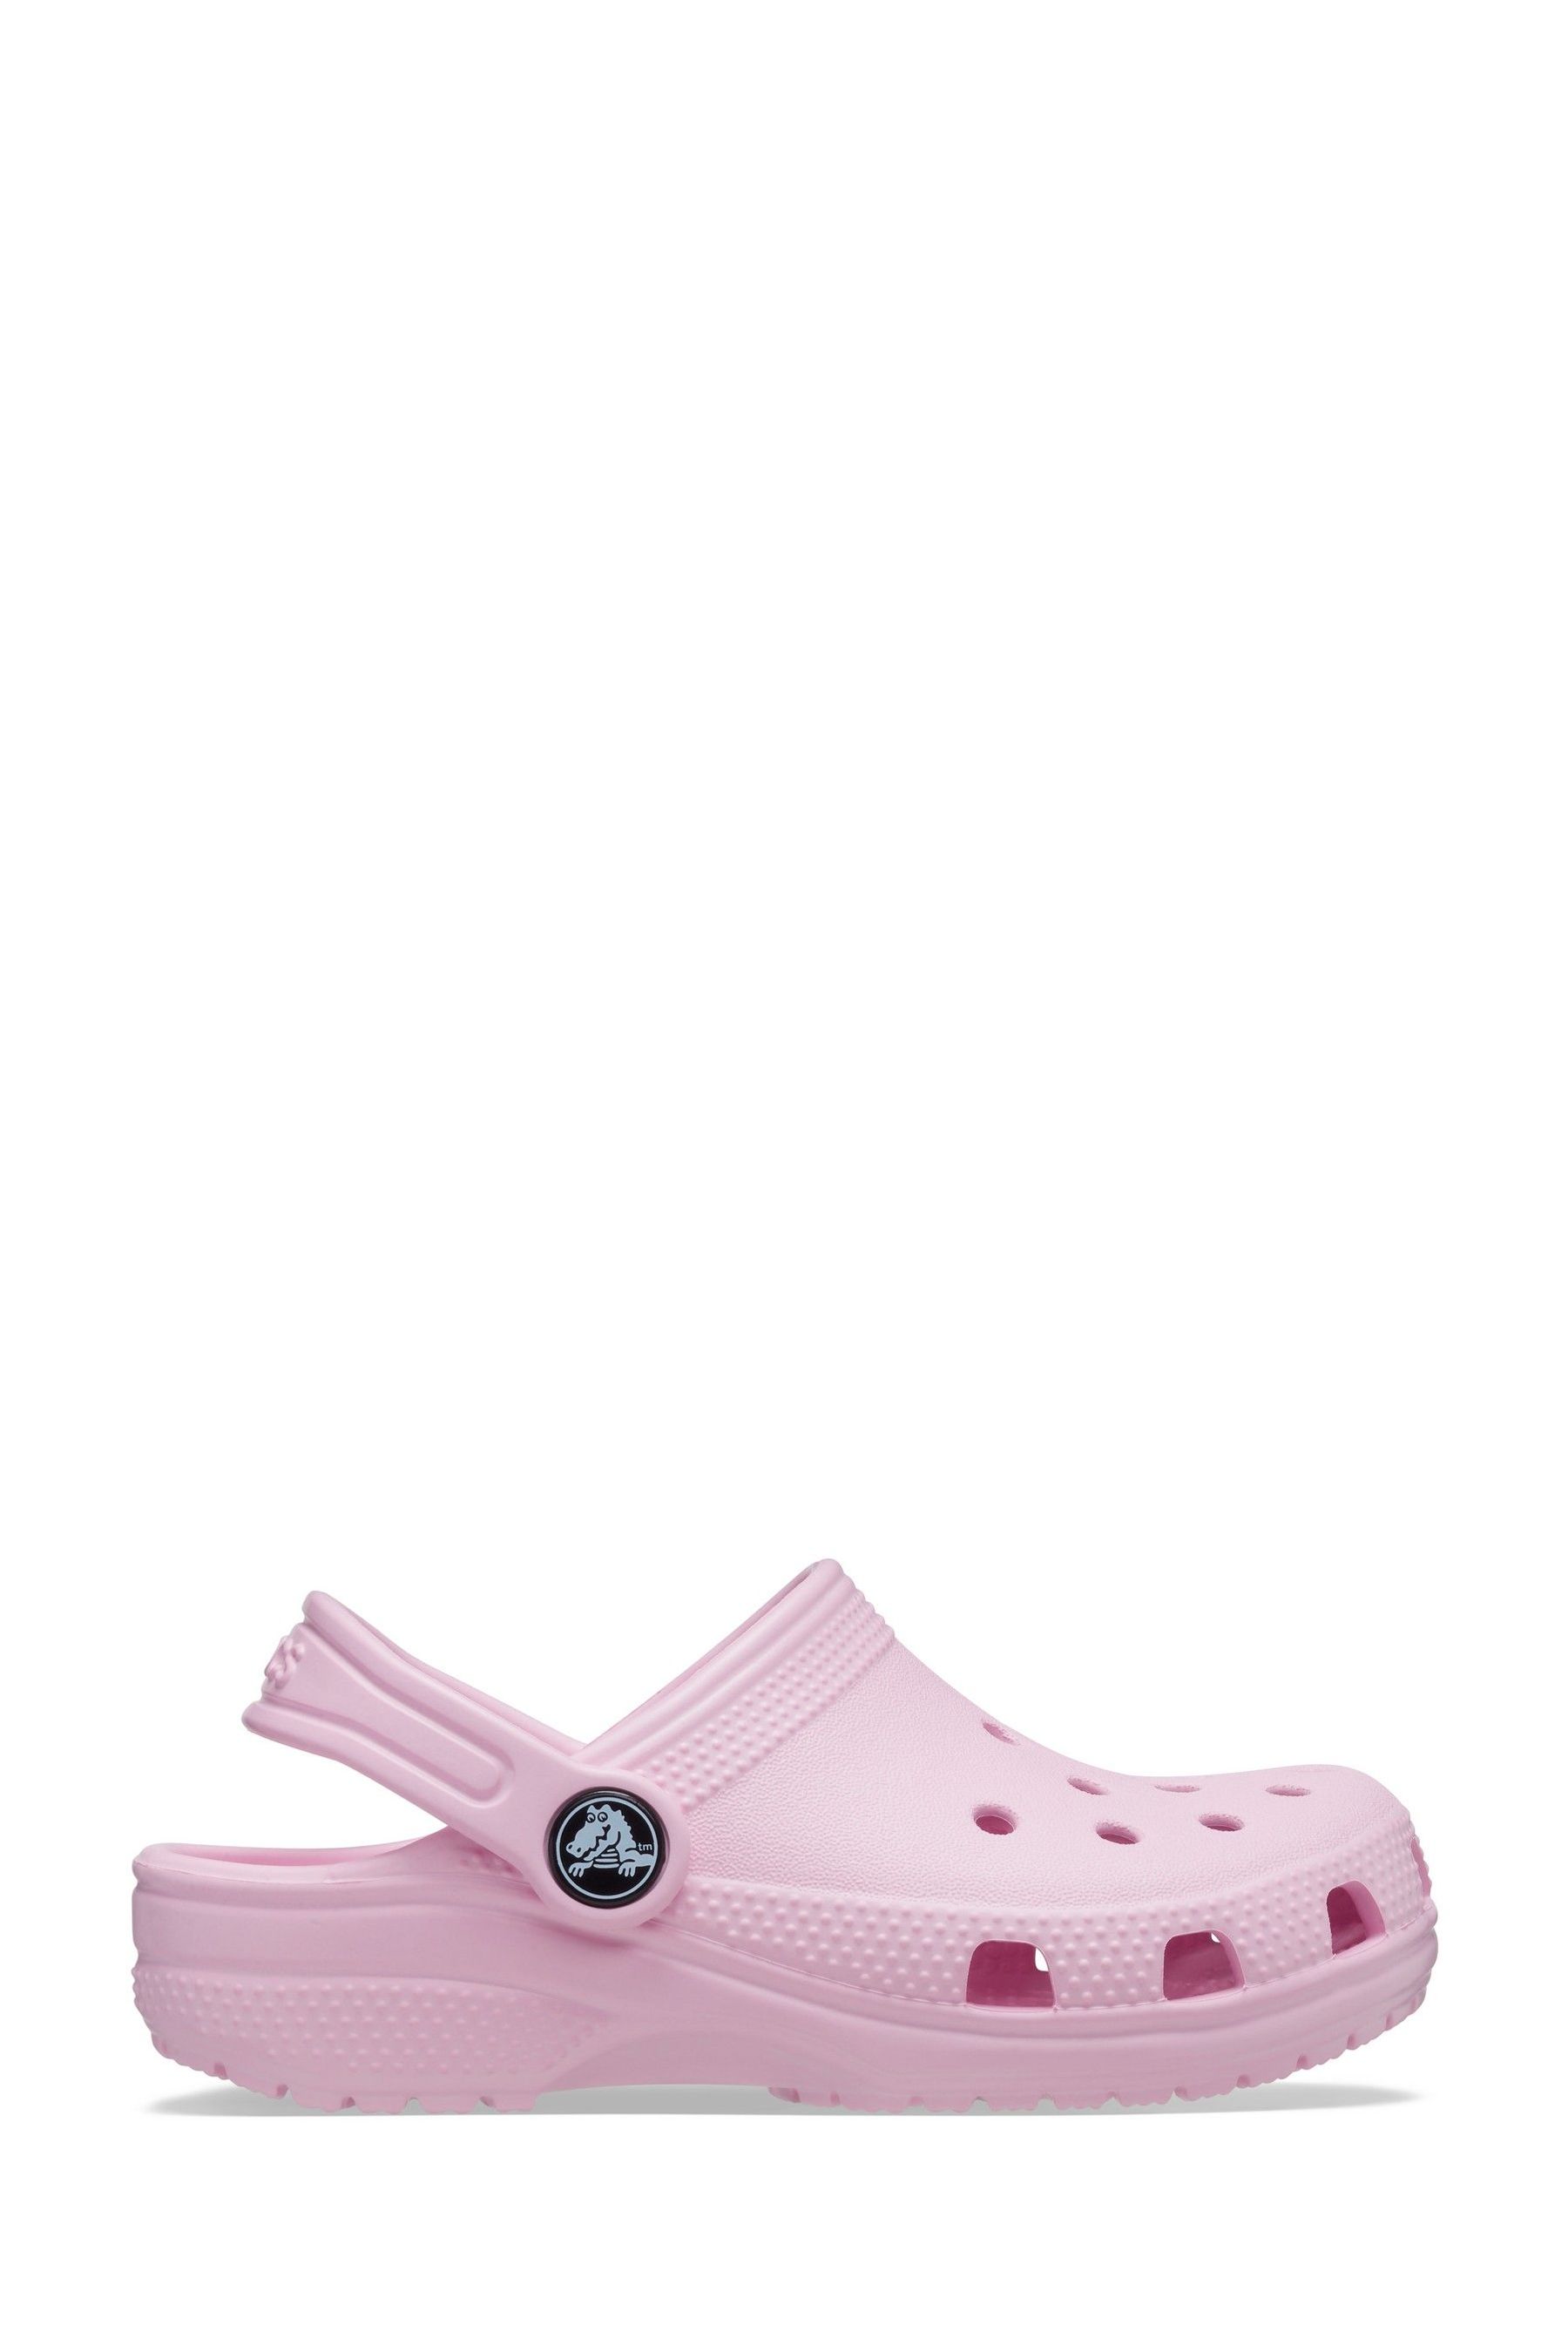 Детские сандалии-сабо для малышей Crocs, розовый